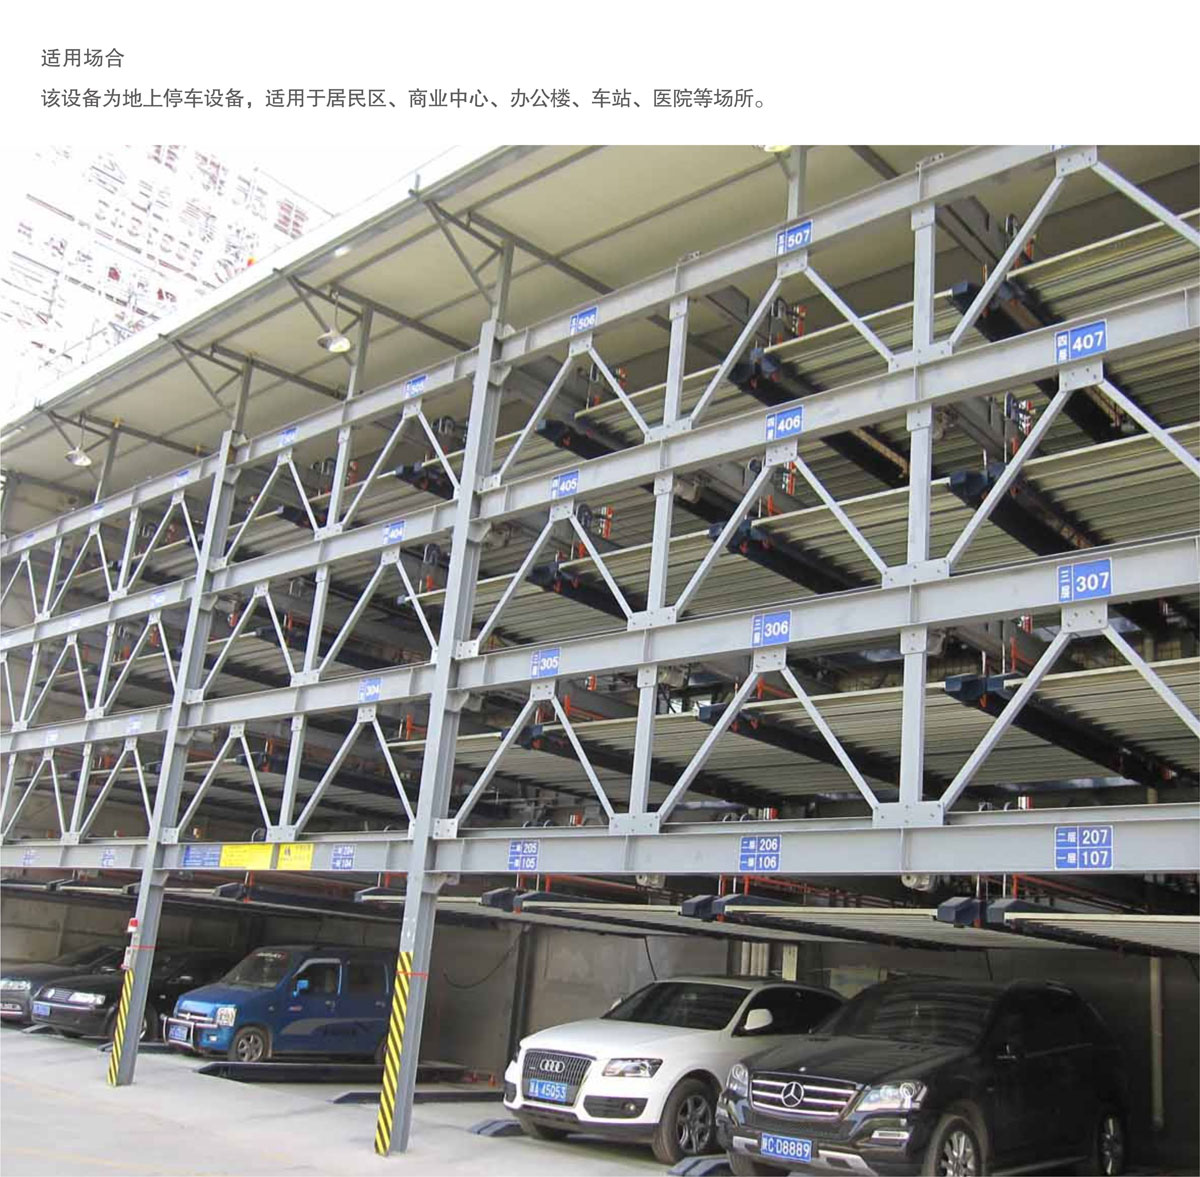 09四至六层PSH4-6升降横移机械式停车设备适用场合.jpg